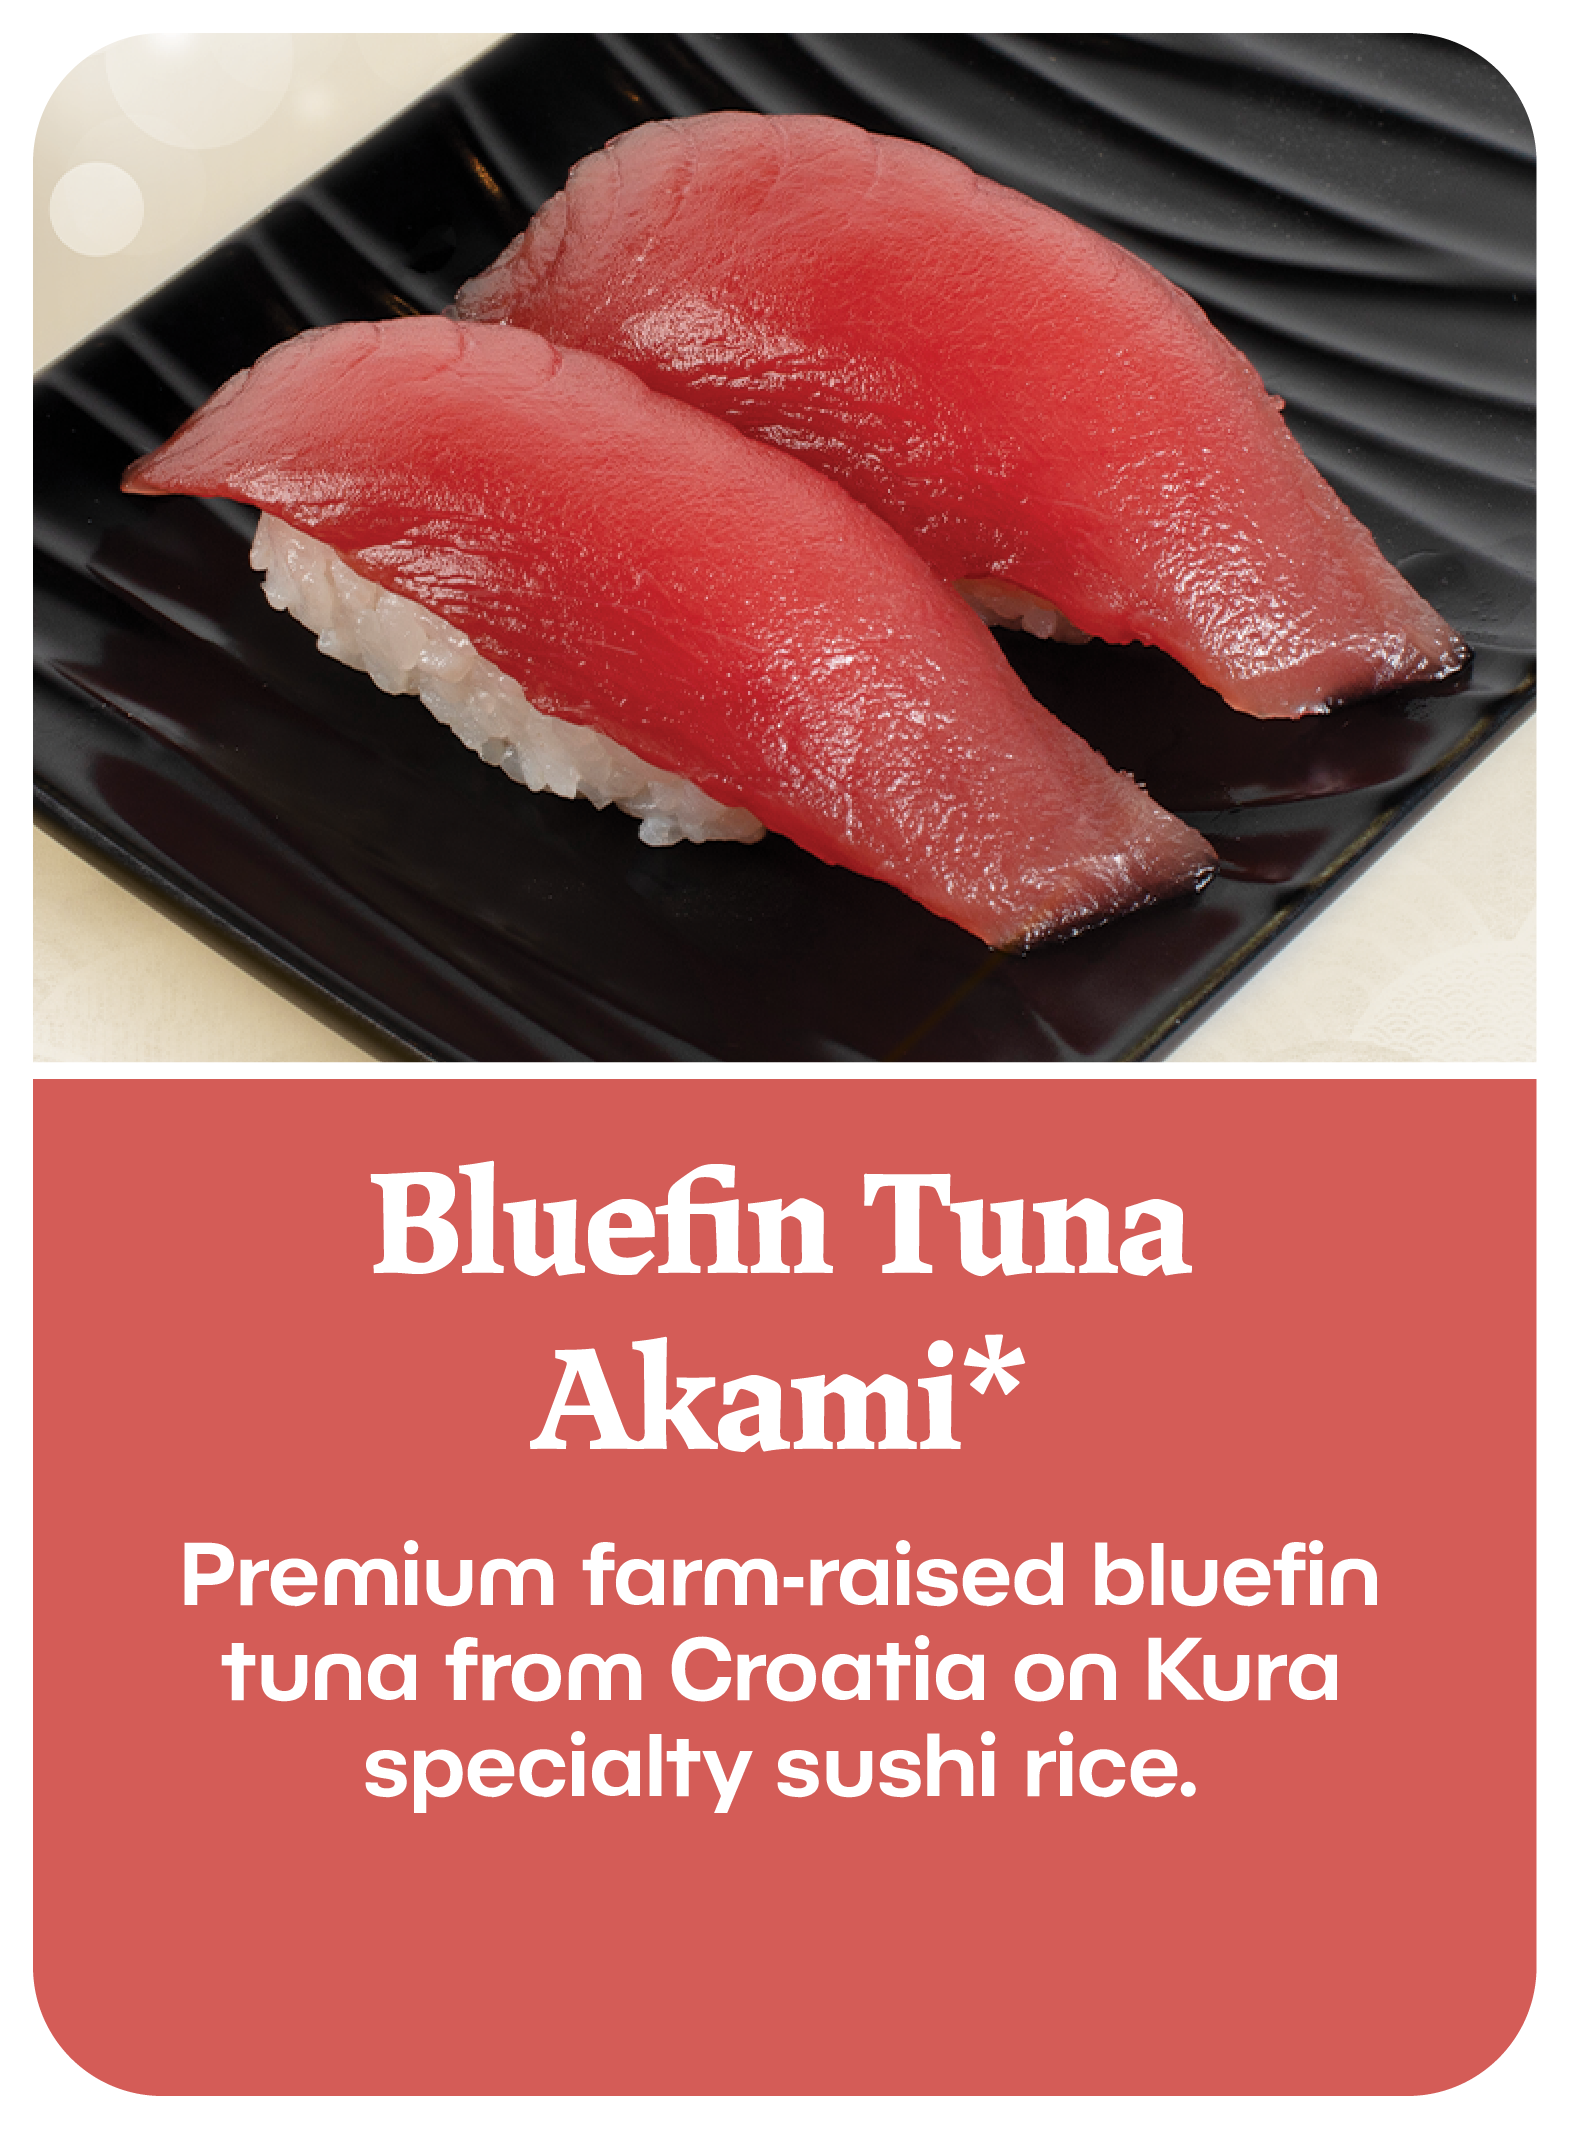 Bluefin Tuna Akani*